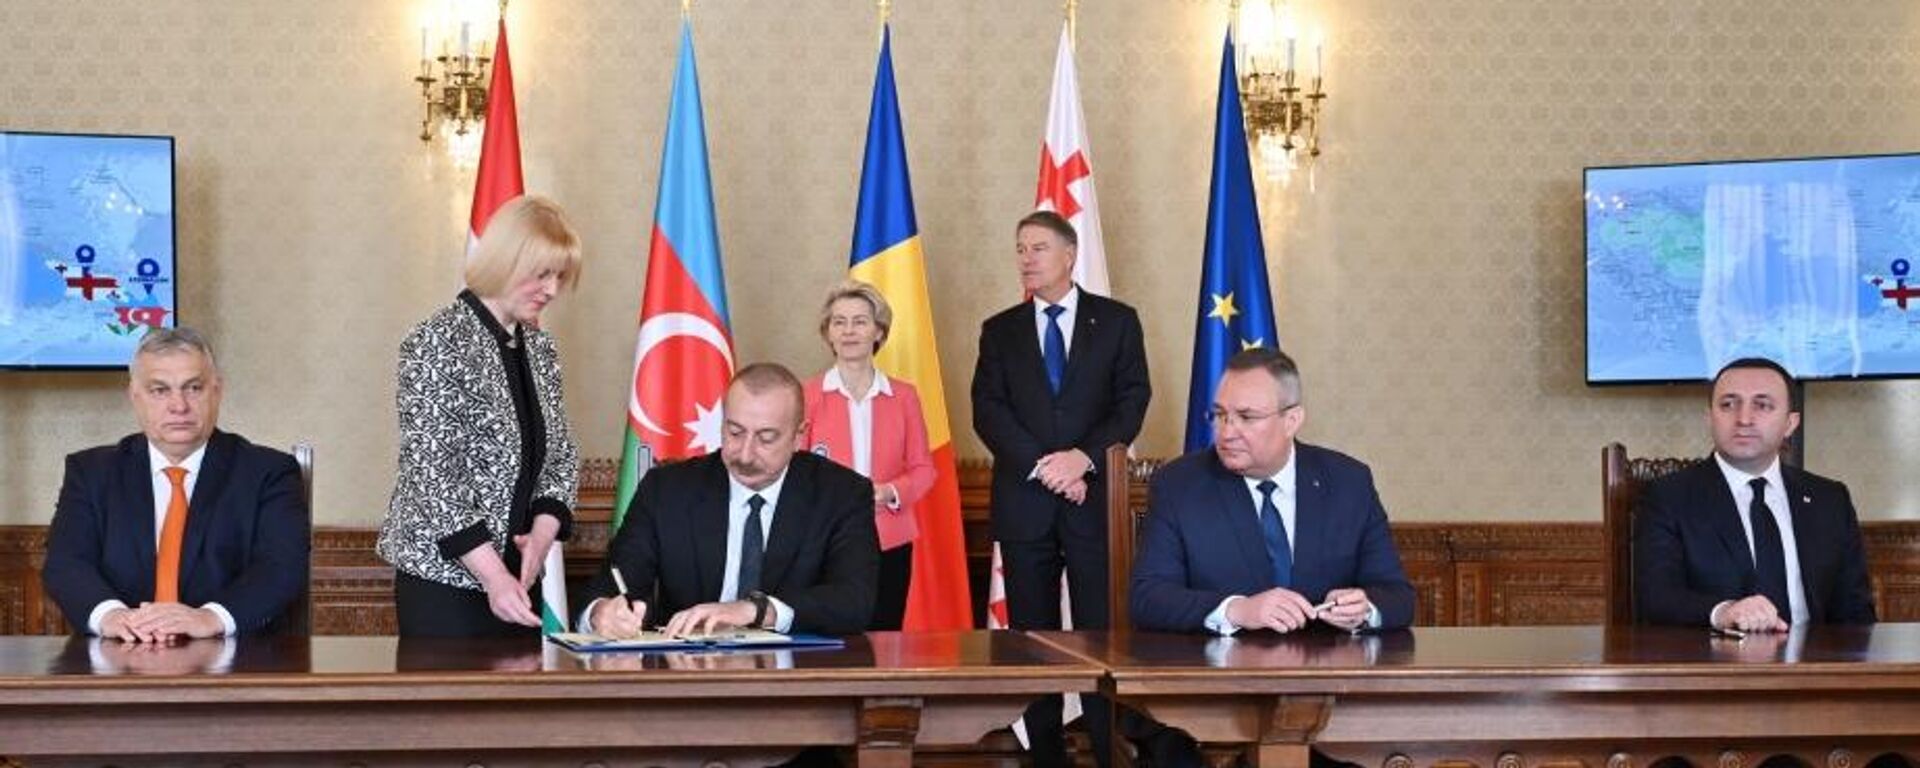 Ильхам Алиев подписал в Бухаресте соглашение о партнерстве в области зеленой энергии  - Sputnik Азербайджан, 1920, 17.12.2022